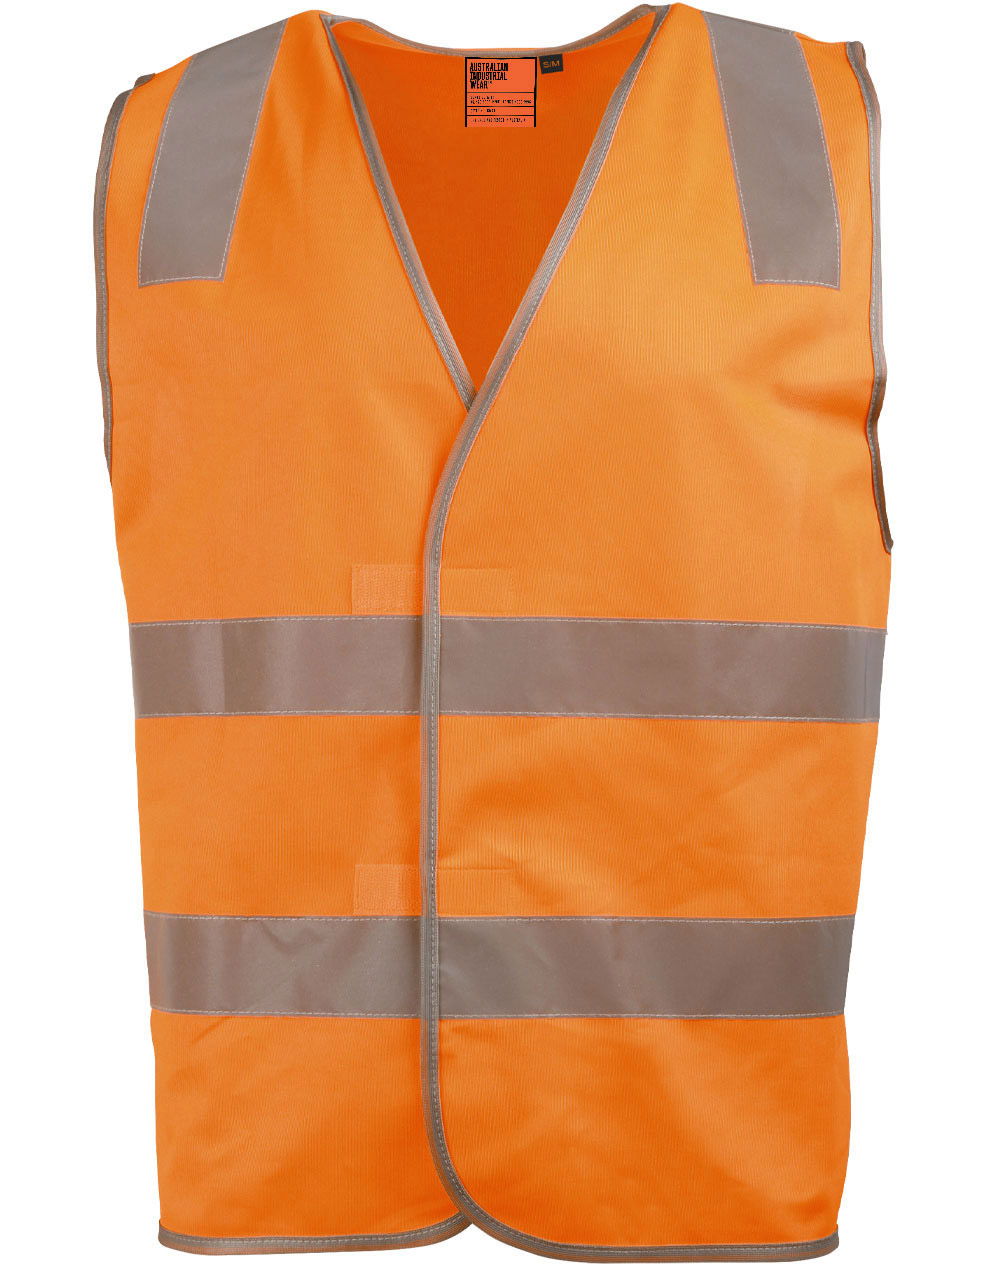 SW43 Safety Vest With Shoulder Tapes